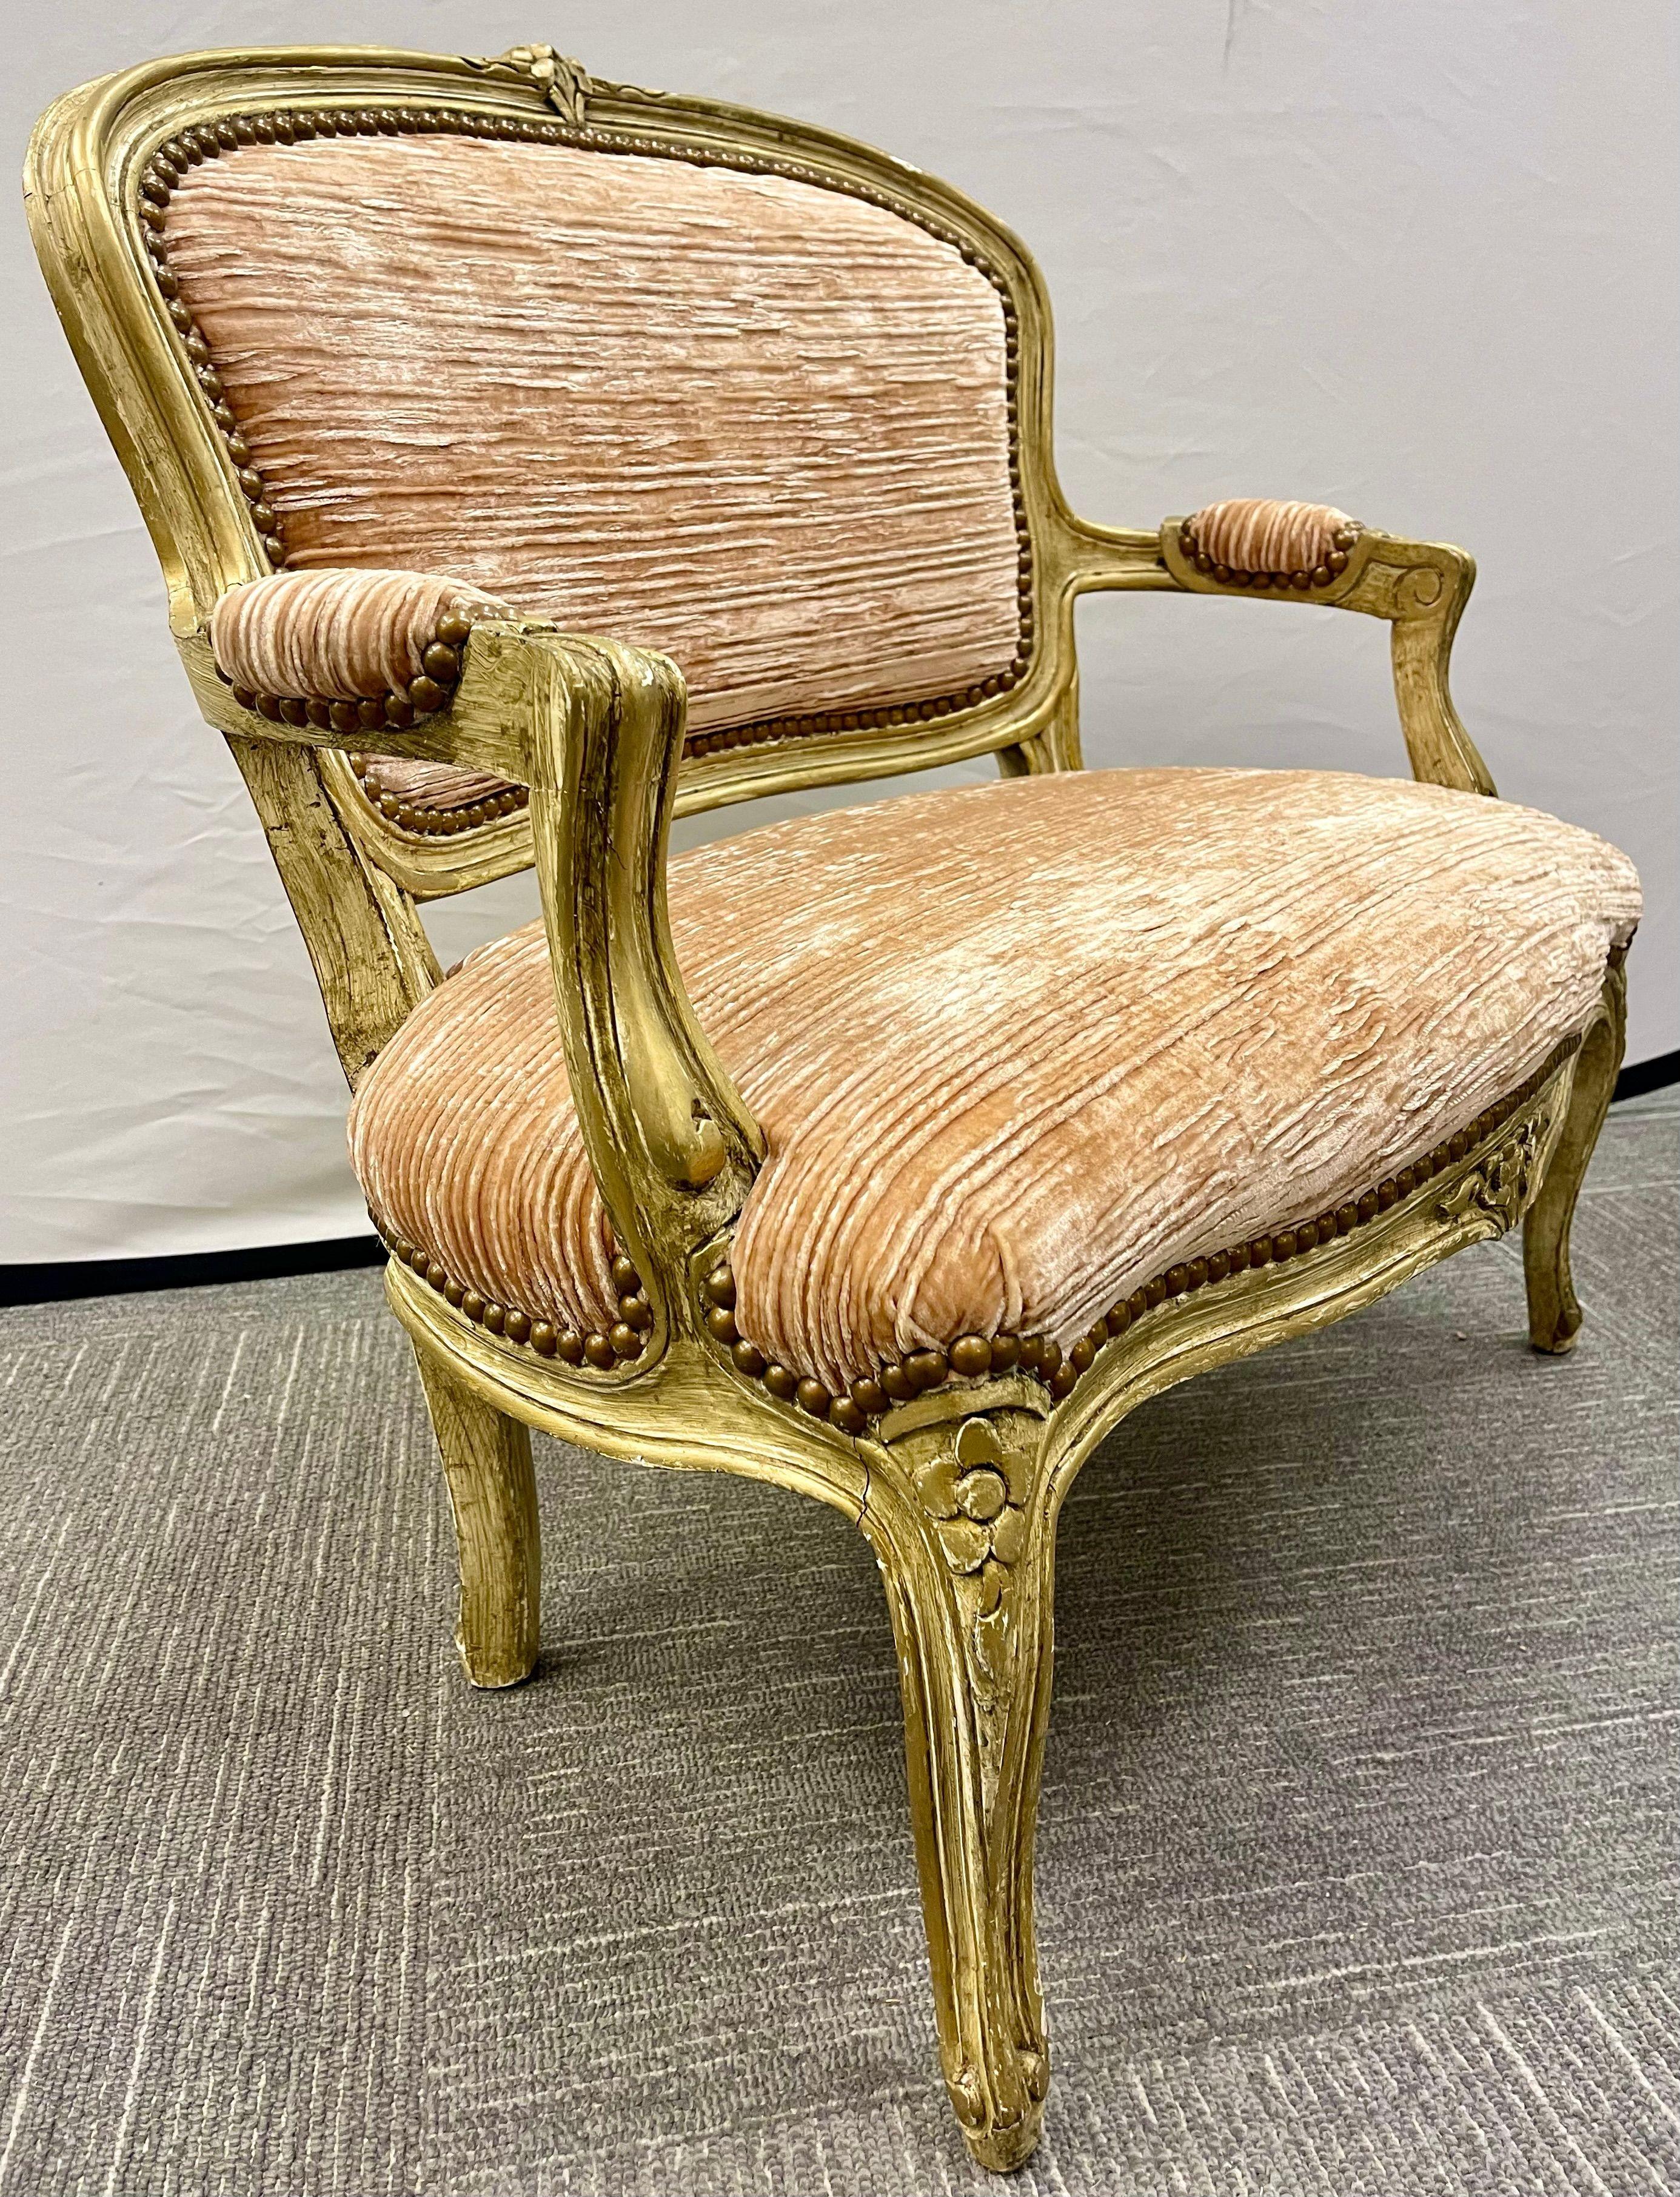 Ein Louis XV Stil gemalt Diminutive loveseat, Sofa. Dieses süße, hübsche Verkäufer-Samplersofa ist fein geschnitzt und in sehr gutem Zustand. Eine hervorragende Ergänzung für jede Puppensammlung.

Maße: Sitzhöhe: 11,5 Zoll.